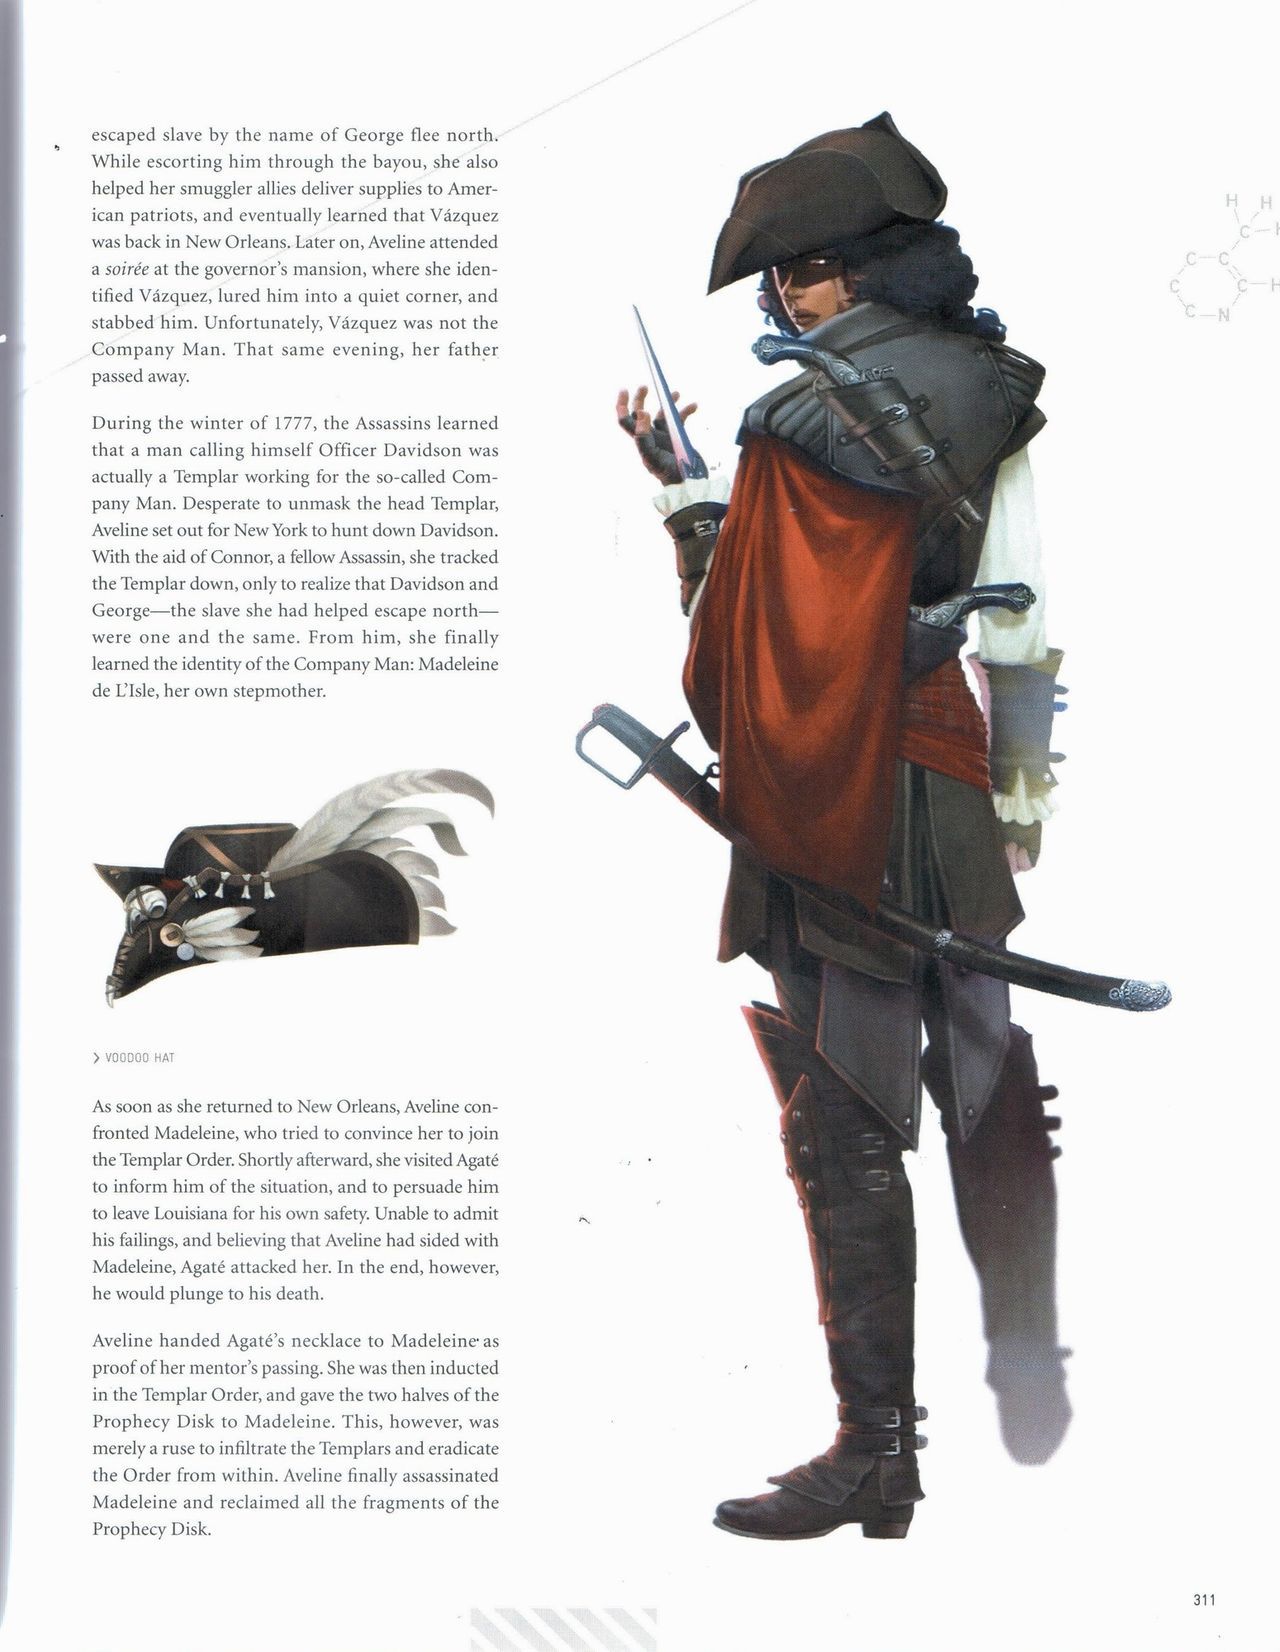 Assassin's Creed Encyclopedia 2.0 312